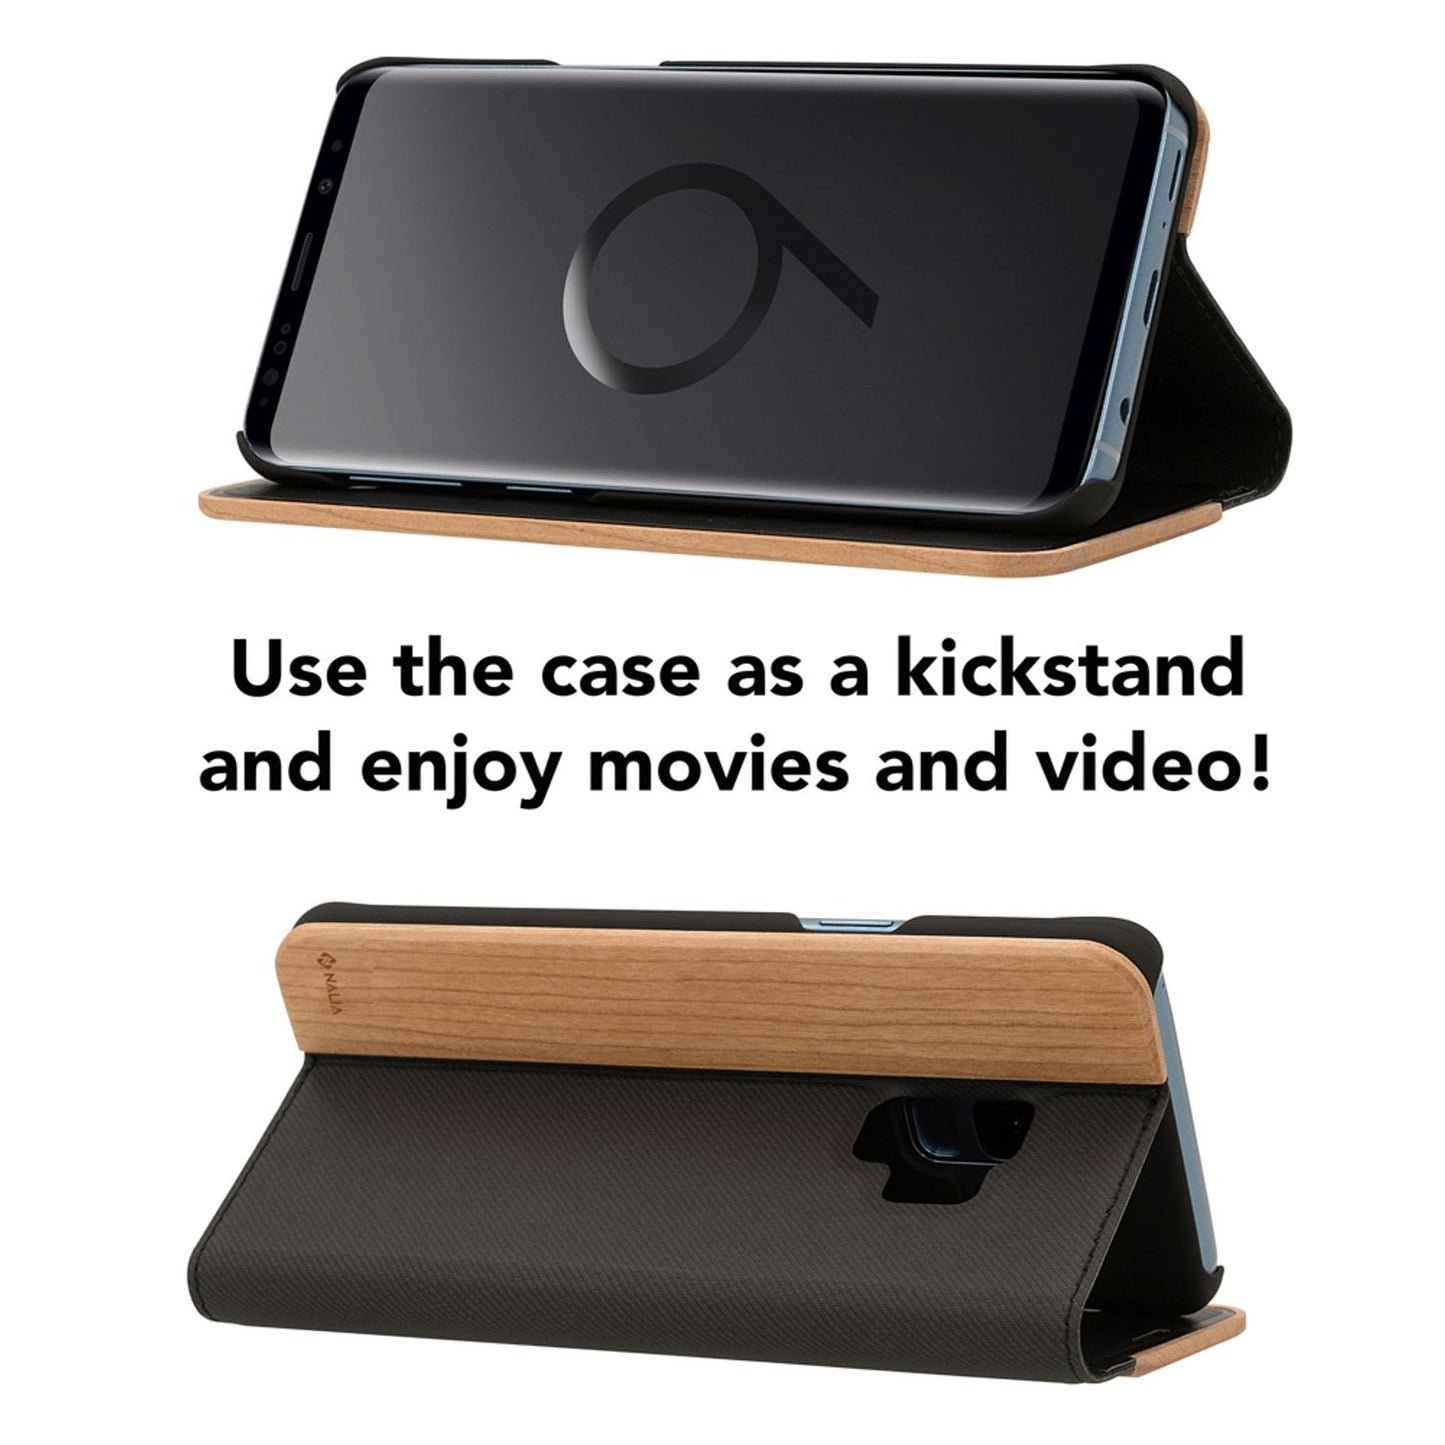 Samsung Galaxy S9 Plus Echt Holz Handy Hülle von NALIA, Wood Case Flip Hard Cover